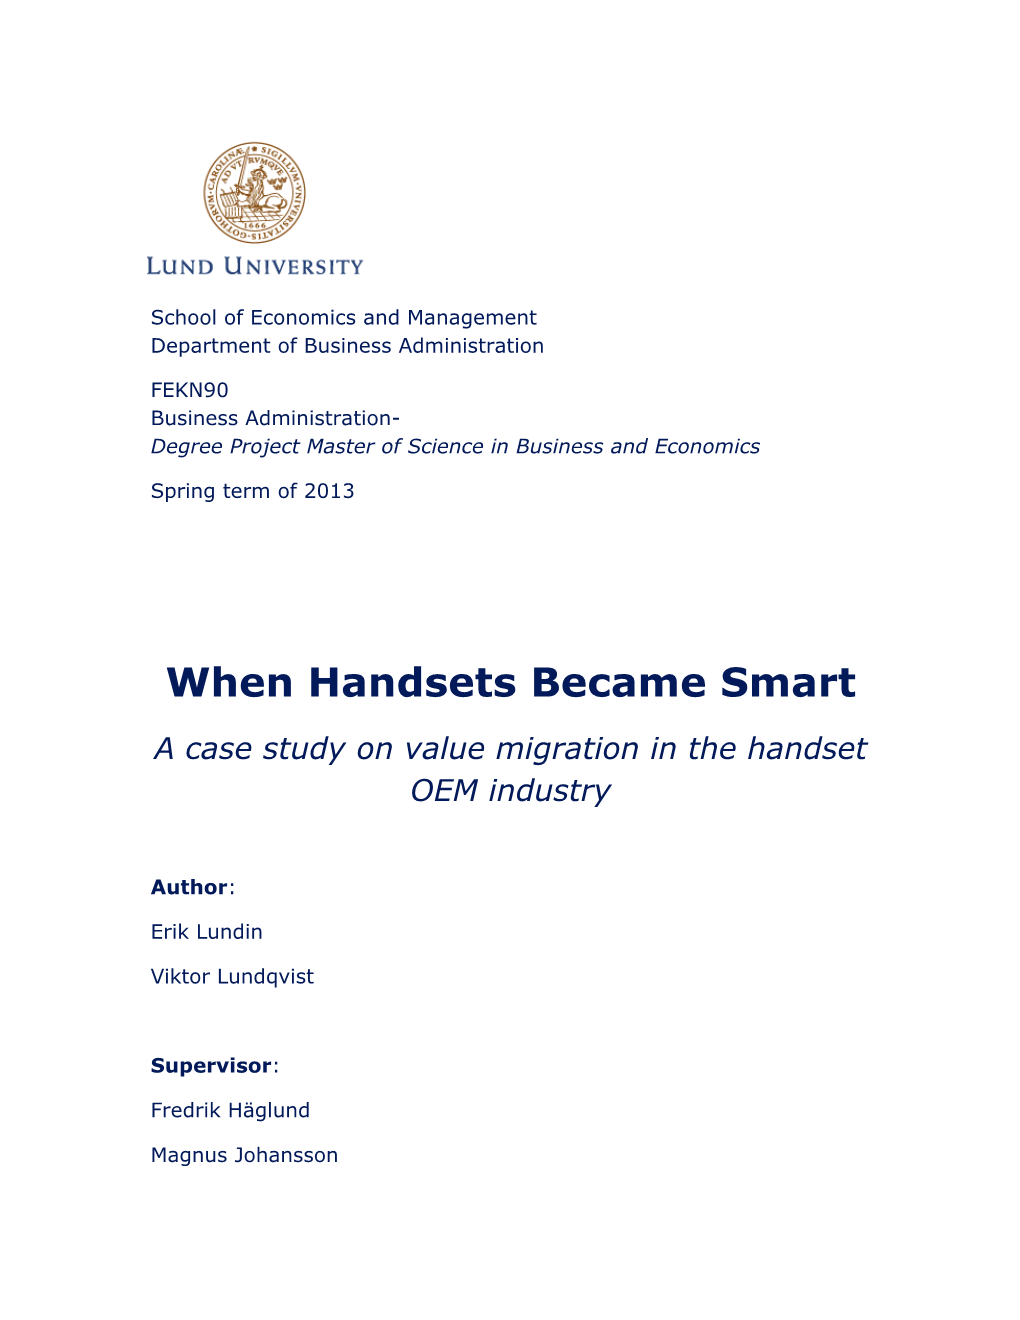 When Handsets Became Smart